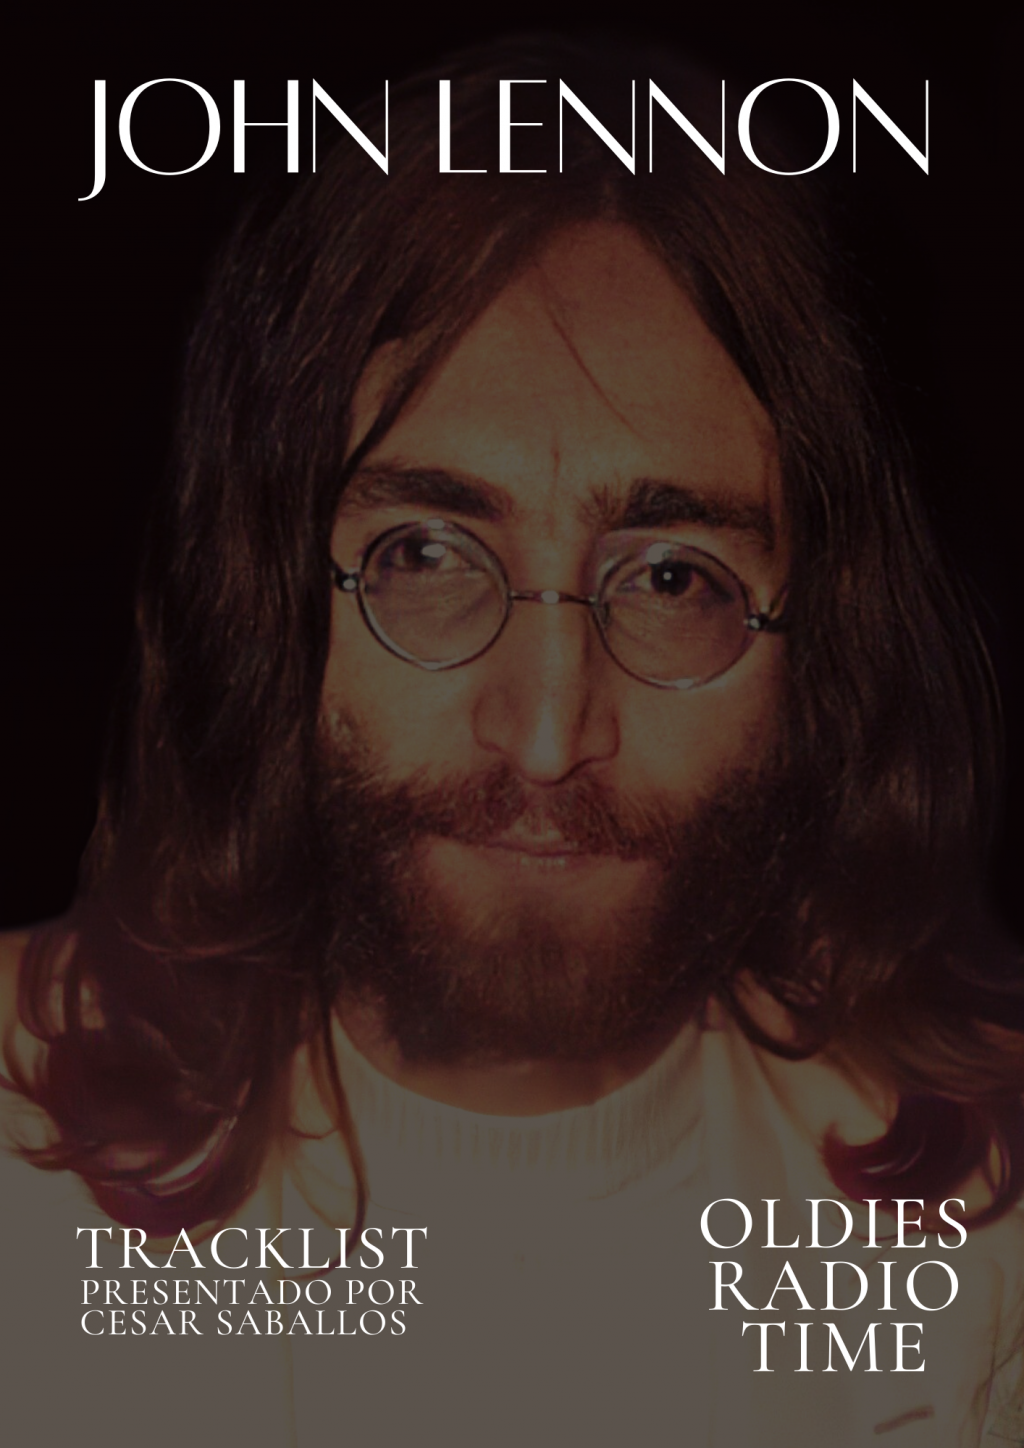 Las Mejores Canciones de John Lennon - Oldies Radio Time